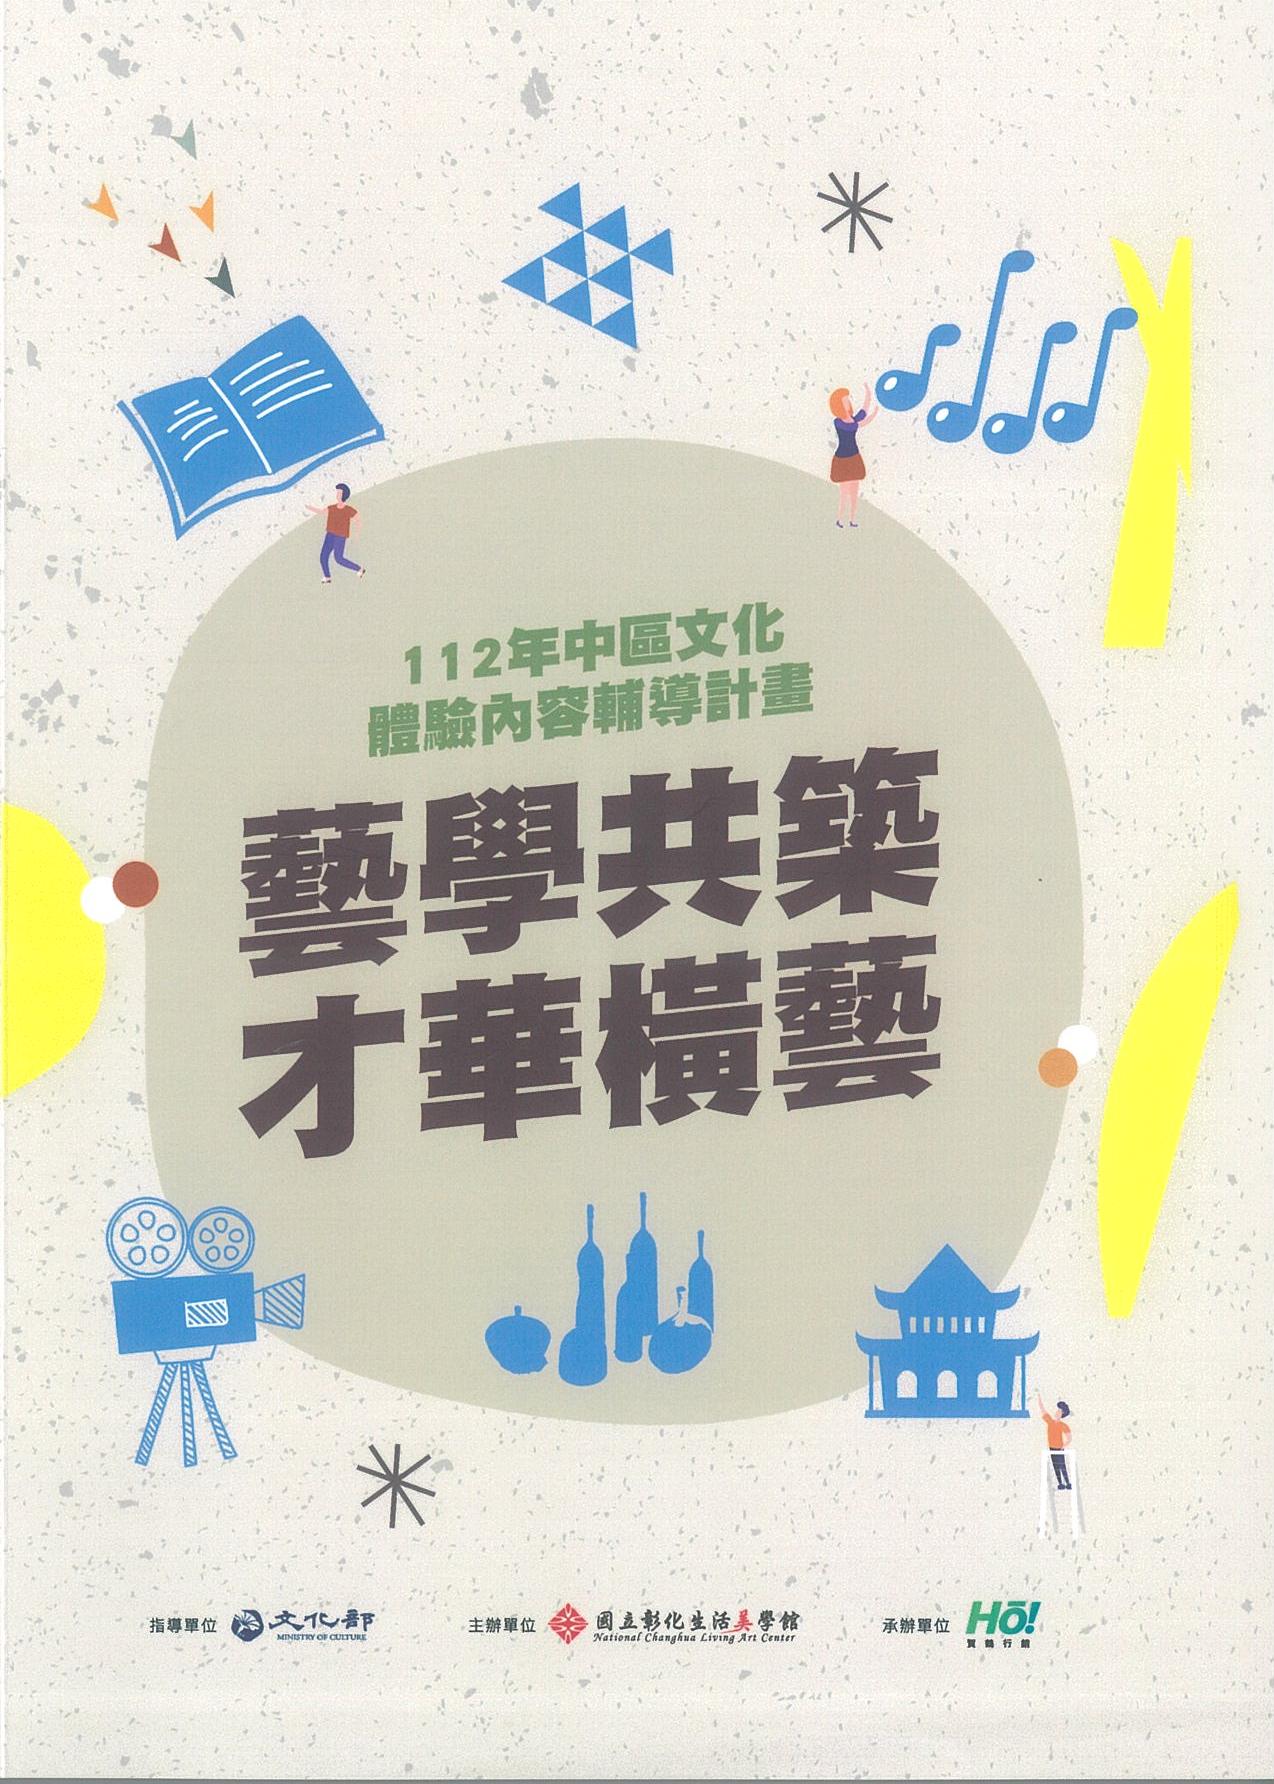 藝學共築  才華橫藝—112年中區文化體驗內容輔導計畫推廣手冊